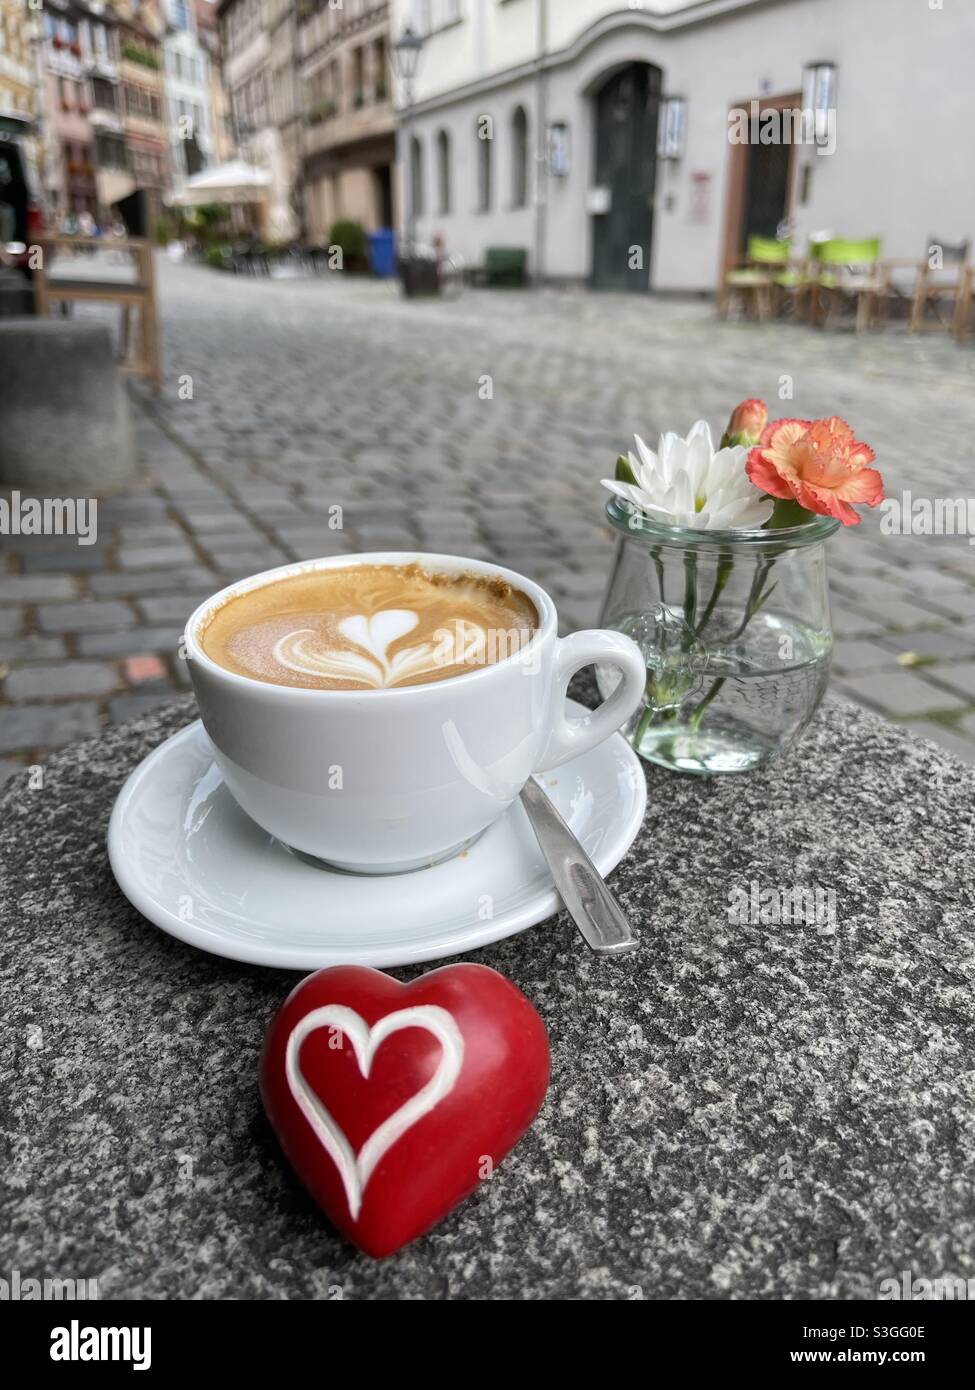 Un agréable moment de détente au bar avec un cappuccino chaud, des fleurs et un coeur en pierre rouge Banque D'Images